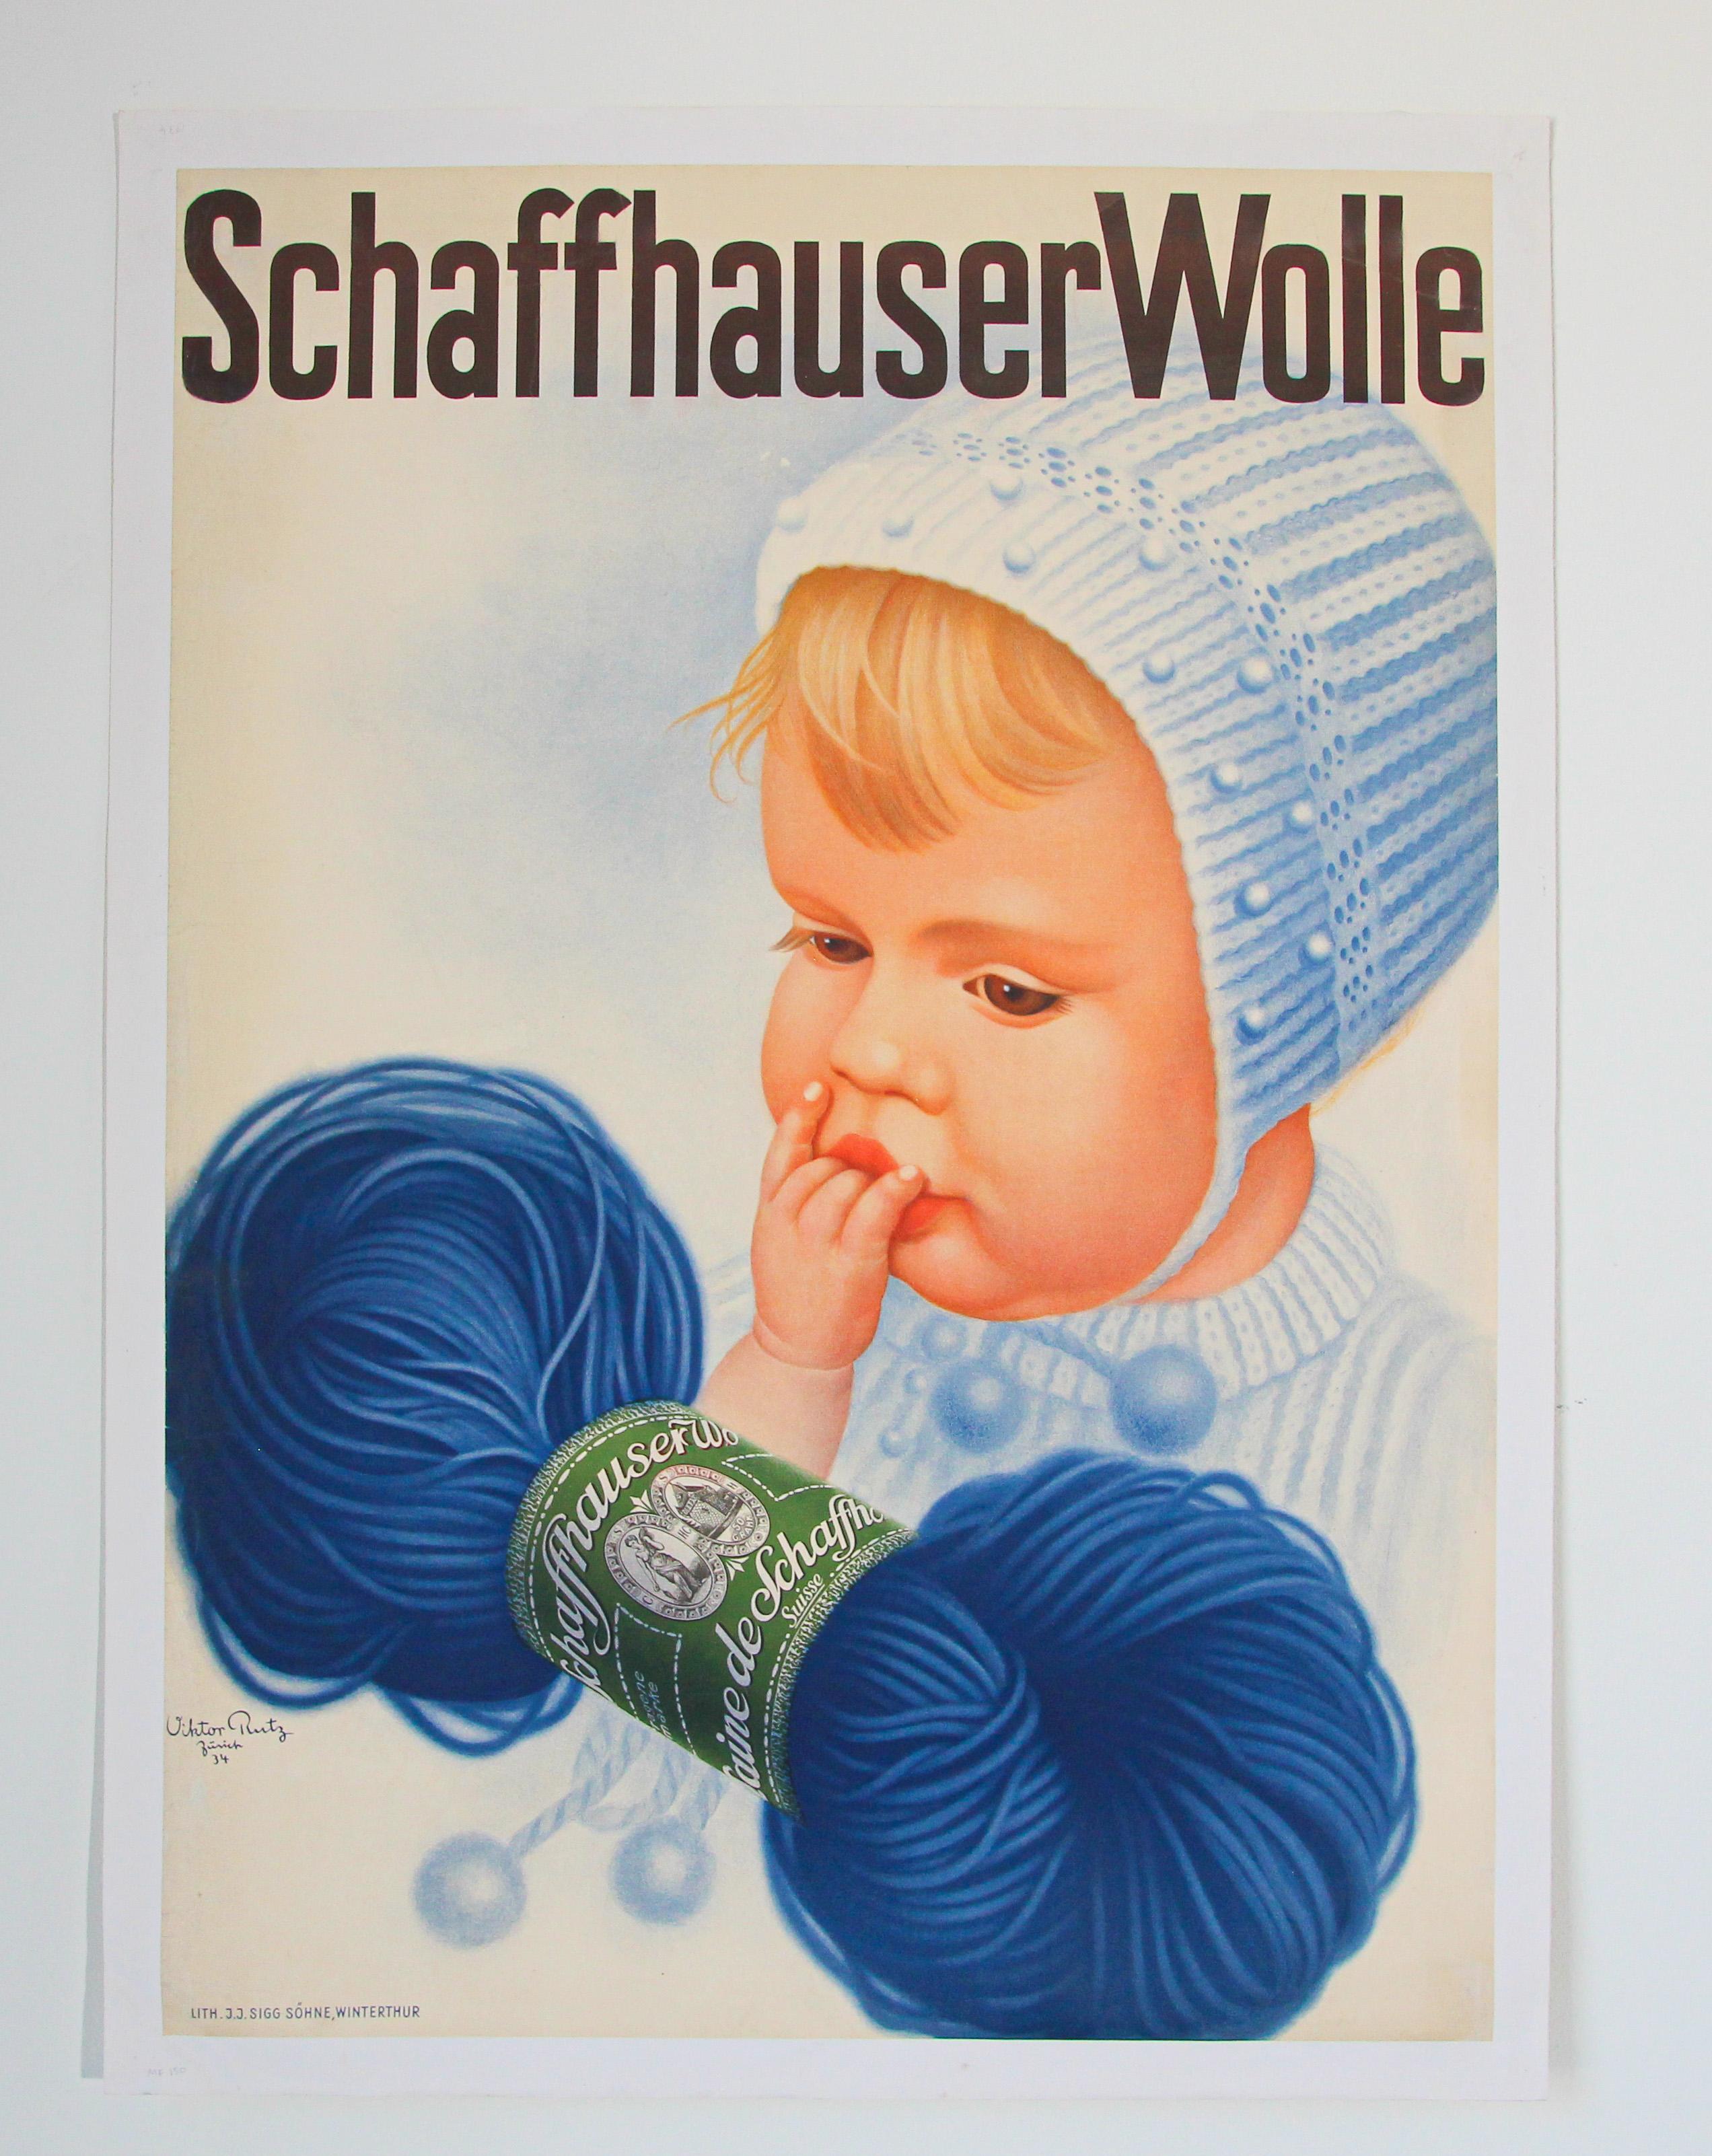 Original Vintage Poster Schweizer Schaffhauser Wolle Wolle Garn Stricken 1935 Baby.
Dies ist ein originaler 1. Druck dieses Plakats von Viktor Rutz Zürich.
Es wurde 1935 gedruckt und diente der Werbung für Schaffhauser Wolle.
Werbeplakat für